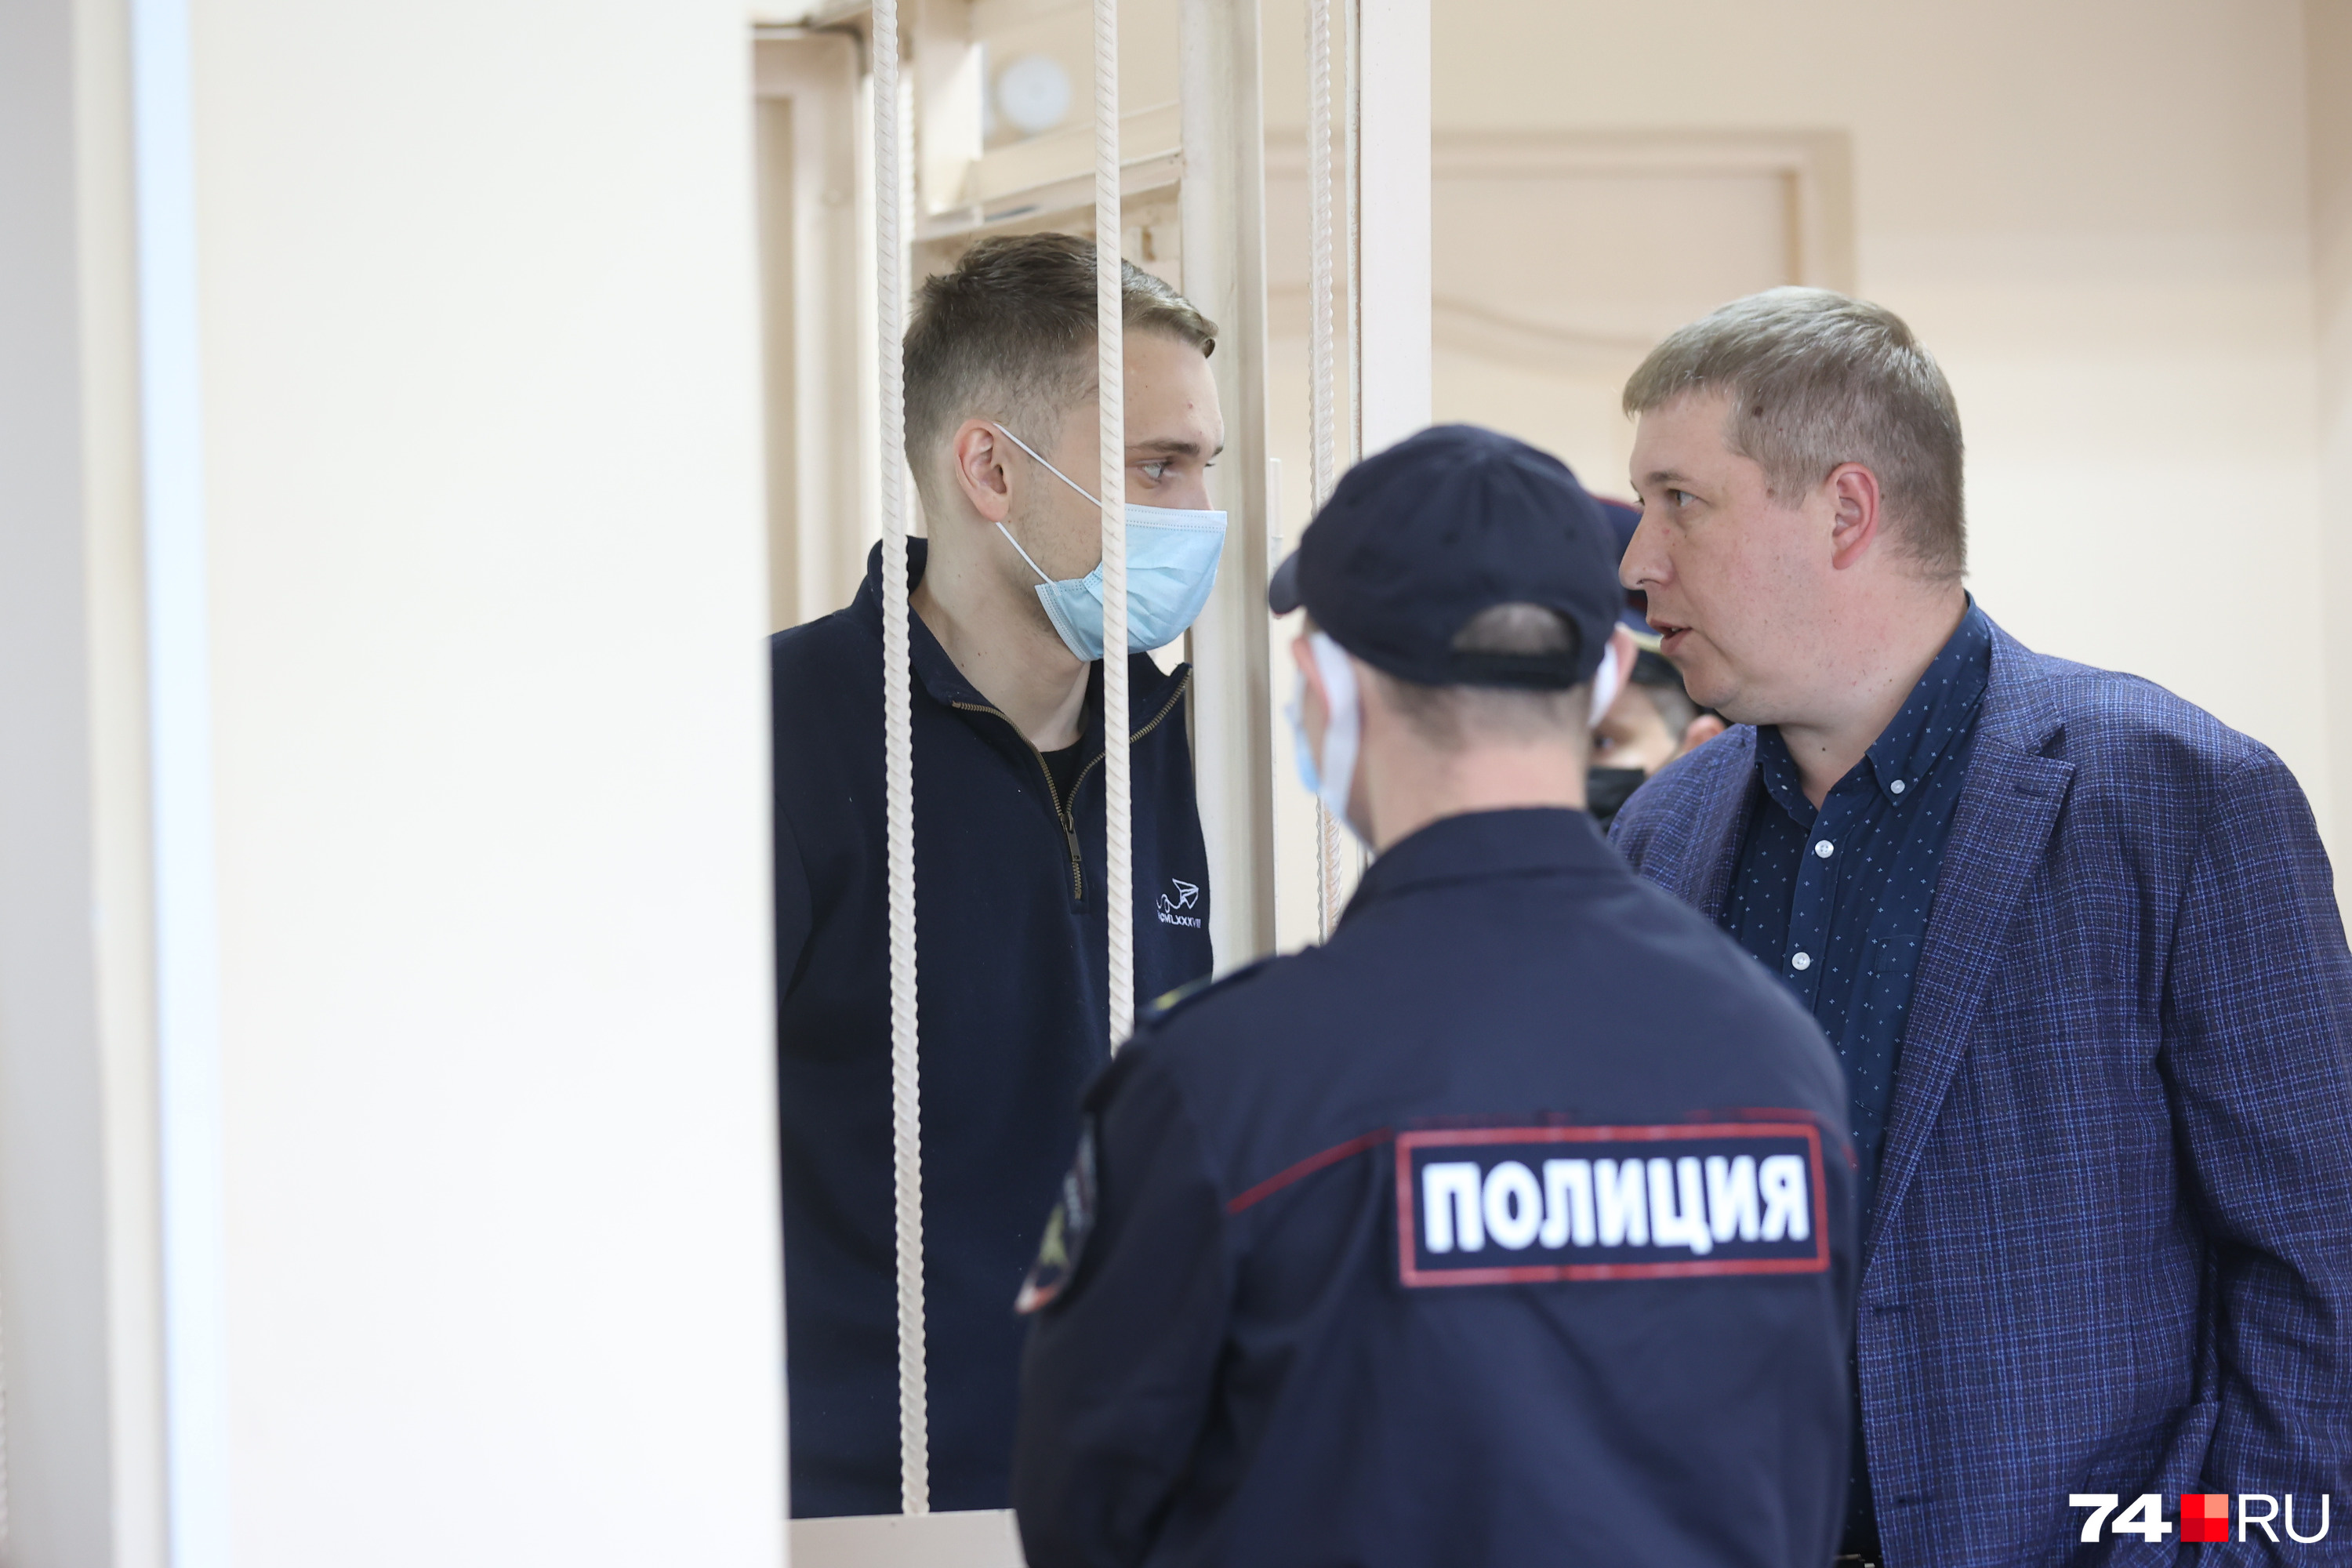 Адвокат Иван Верченко, представляющий интересы Дмитрия Зыкова, высказал свою позицию к предъявленному обвинению